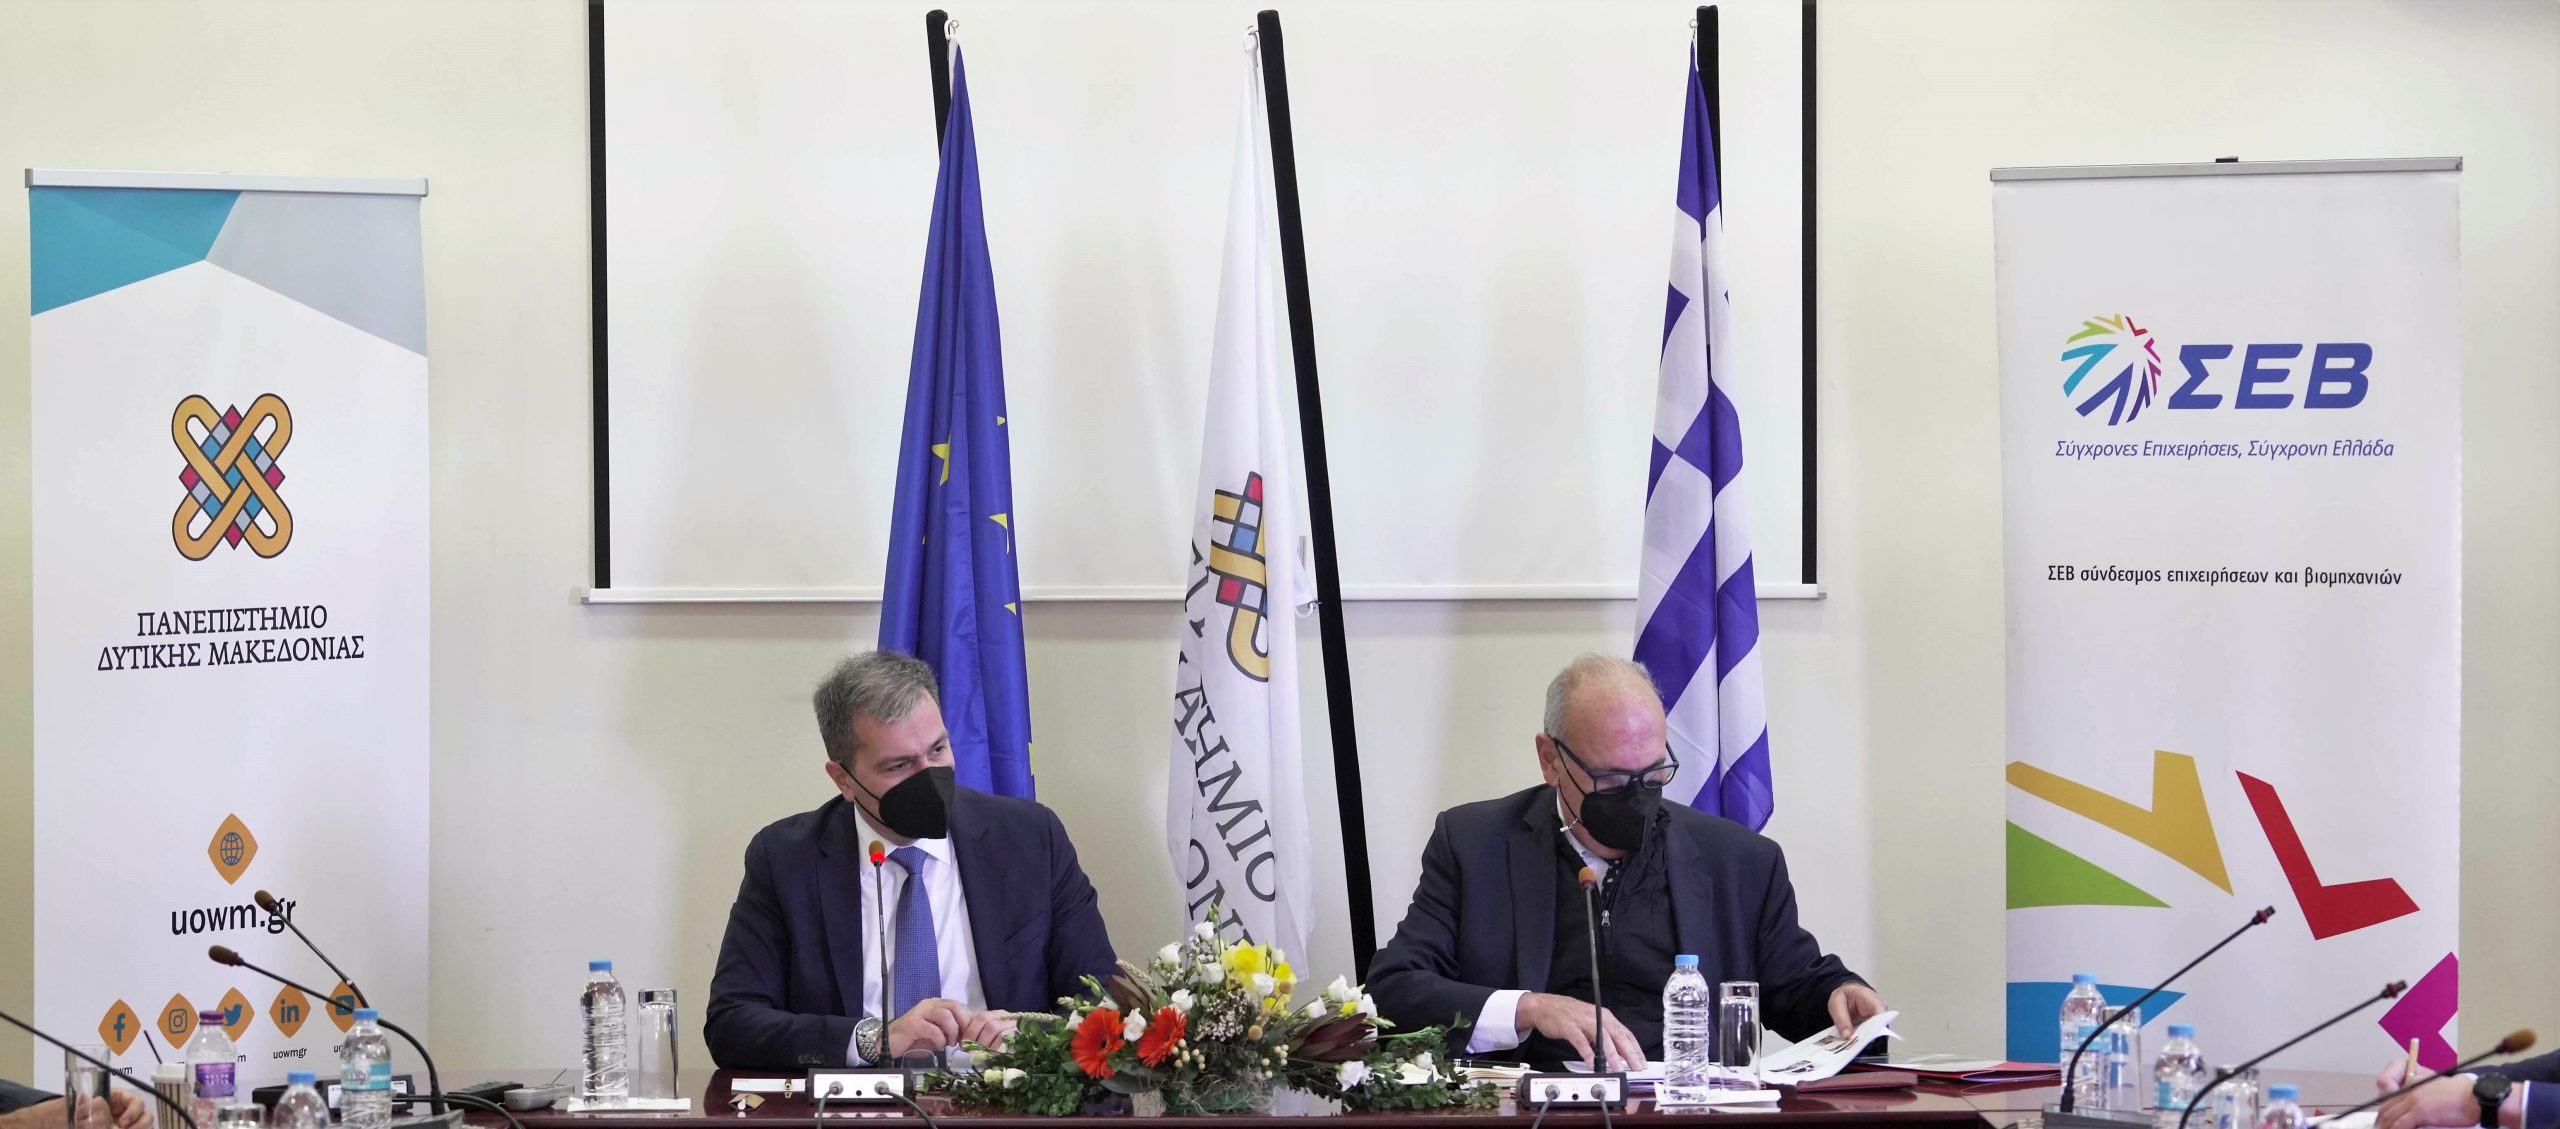 ΣΕΒ: Συμφωνία συνεργασίας με το Πανεπιστήμιο Δυτικής Μακεδονίας